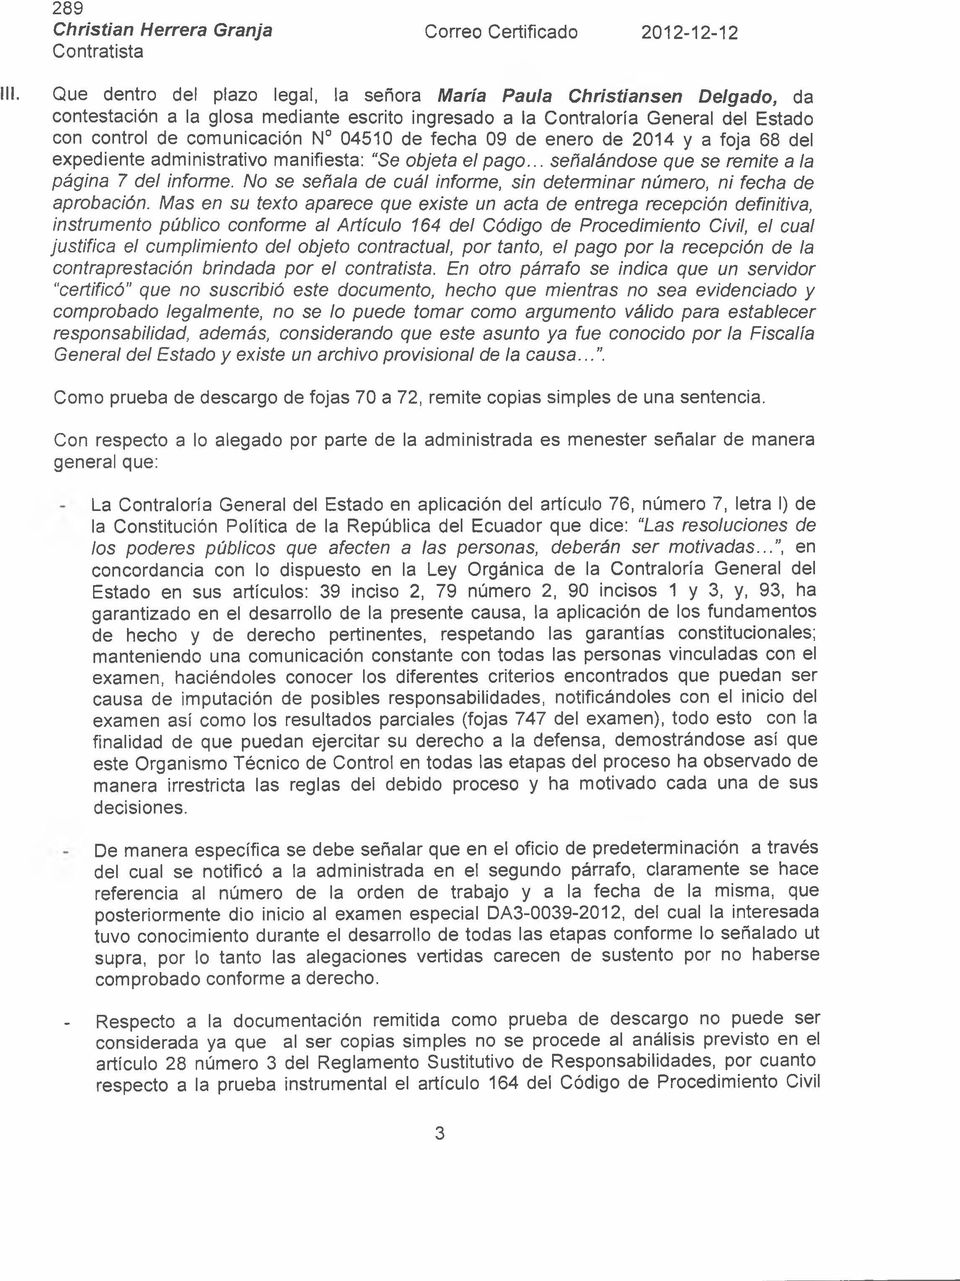 de fecha 09 de enero de 2014 y a foja 68 del expediente administrativo manifiesta: Se objeta el pago... señalándose que se remite a la página 7 del informe.